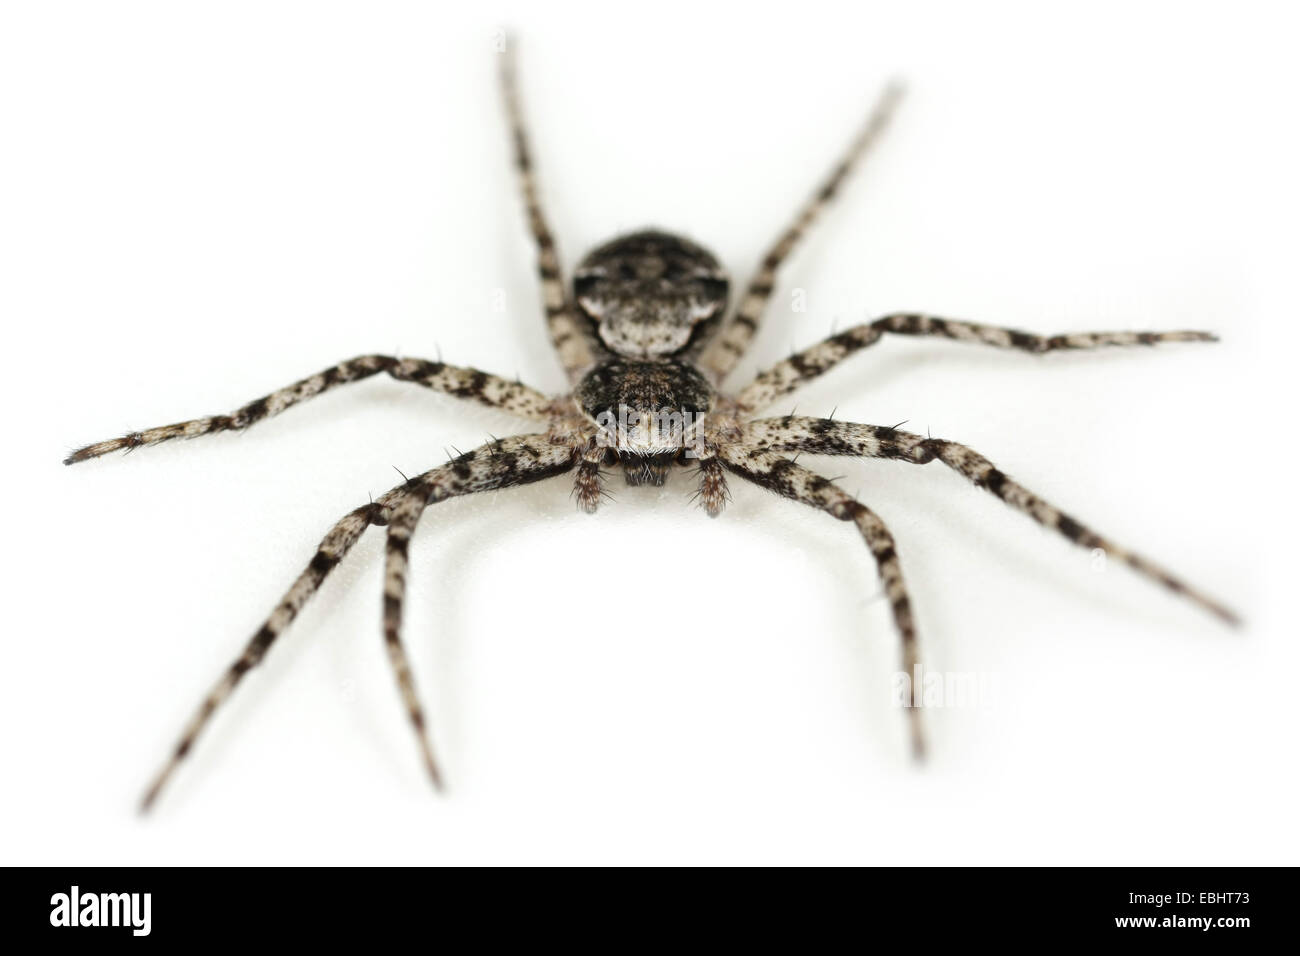 Il Lichen running-spider (Philodromus margaritatus) su uno sfondo bianco, parte della famiglia Philodromidae - Esecuzione di ragni granchio. Foto Stock